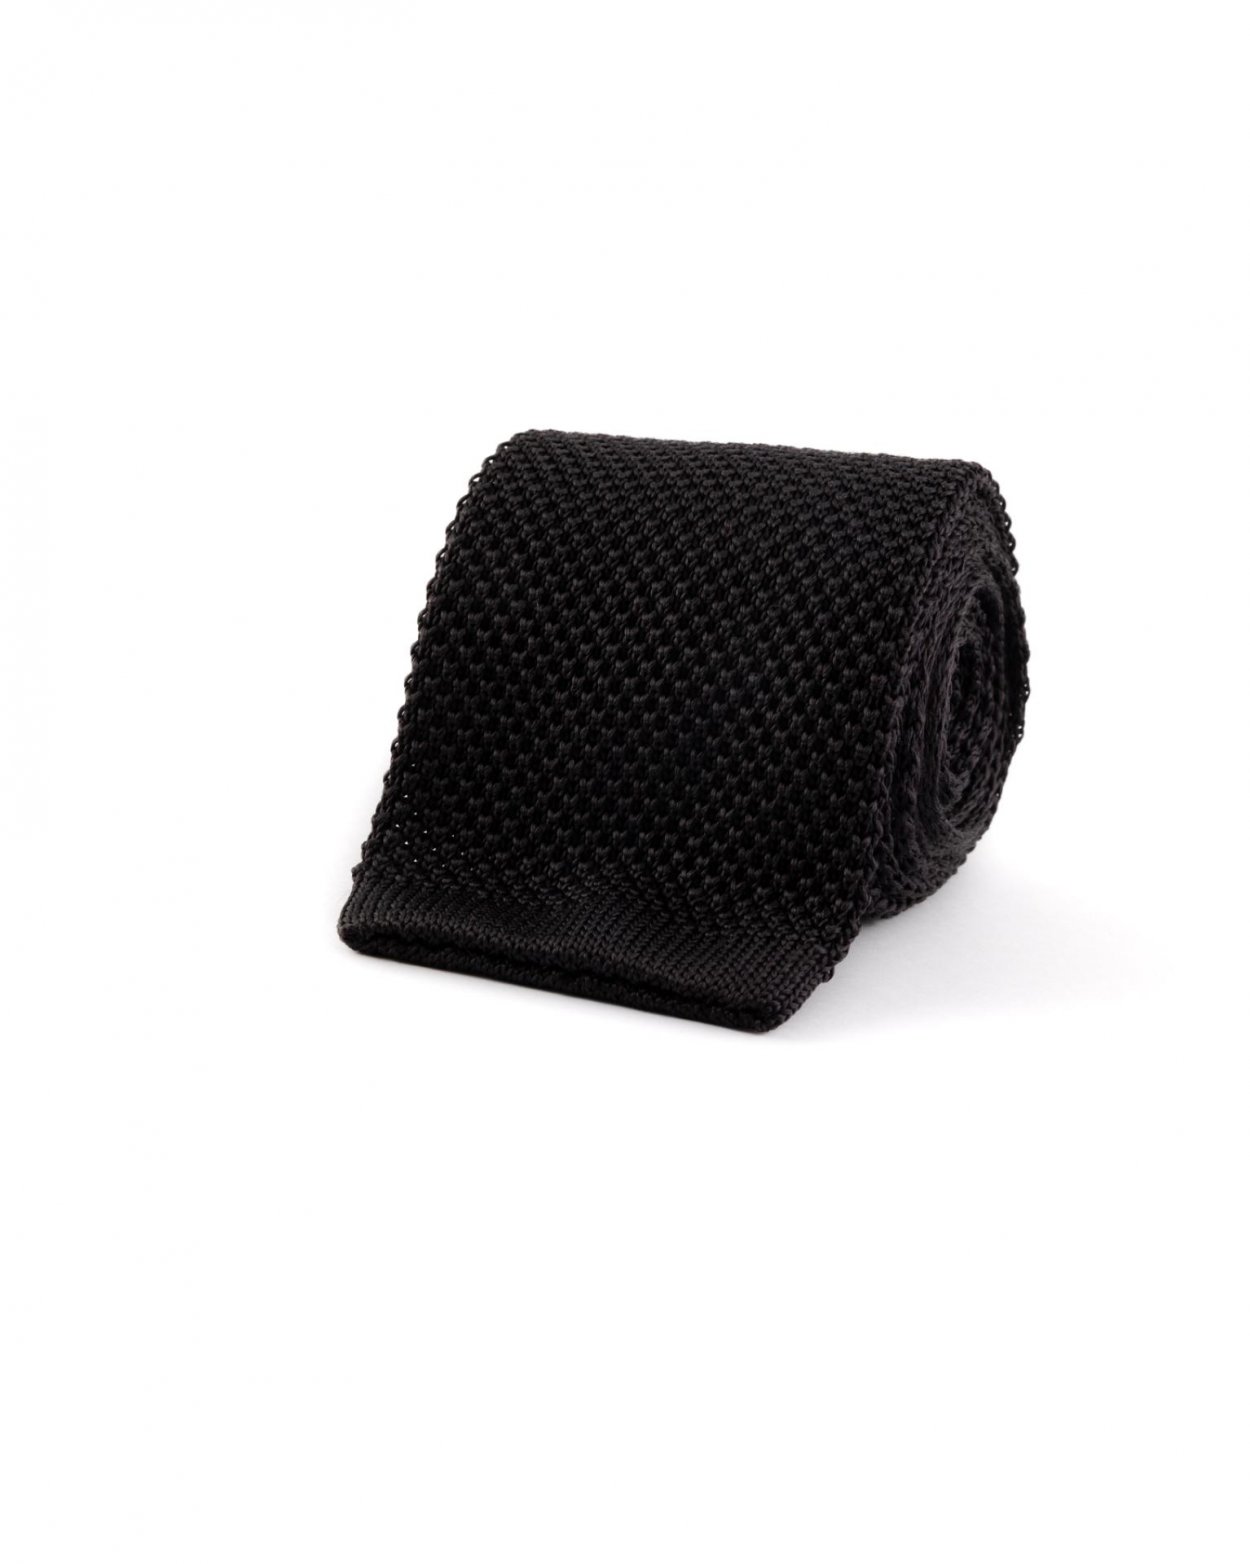 Černá pletená hedvábná kravata s rovným koncem